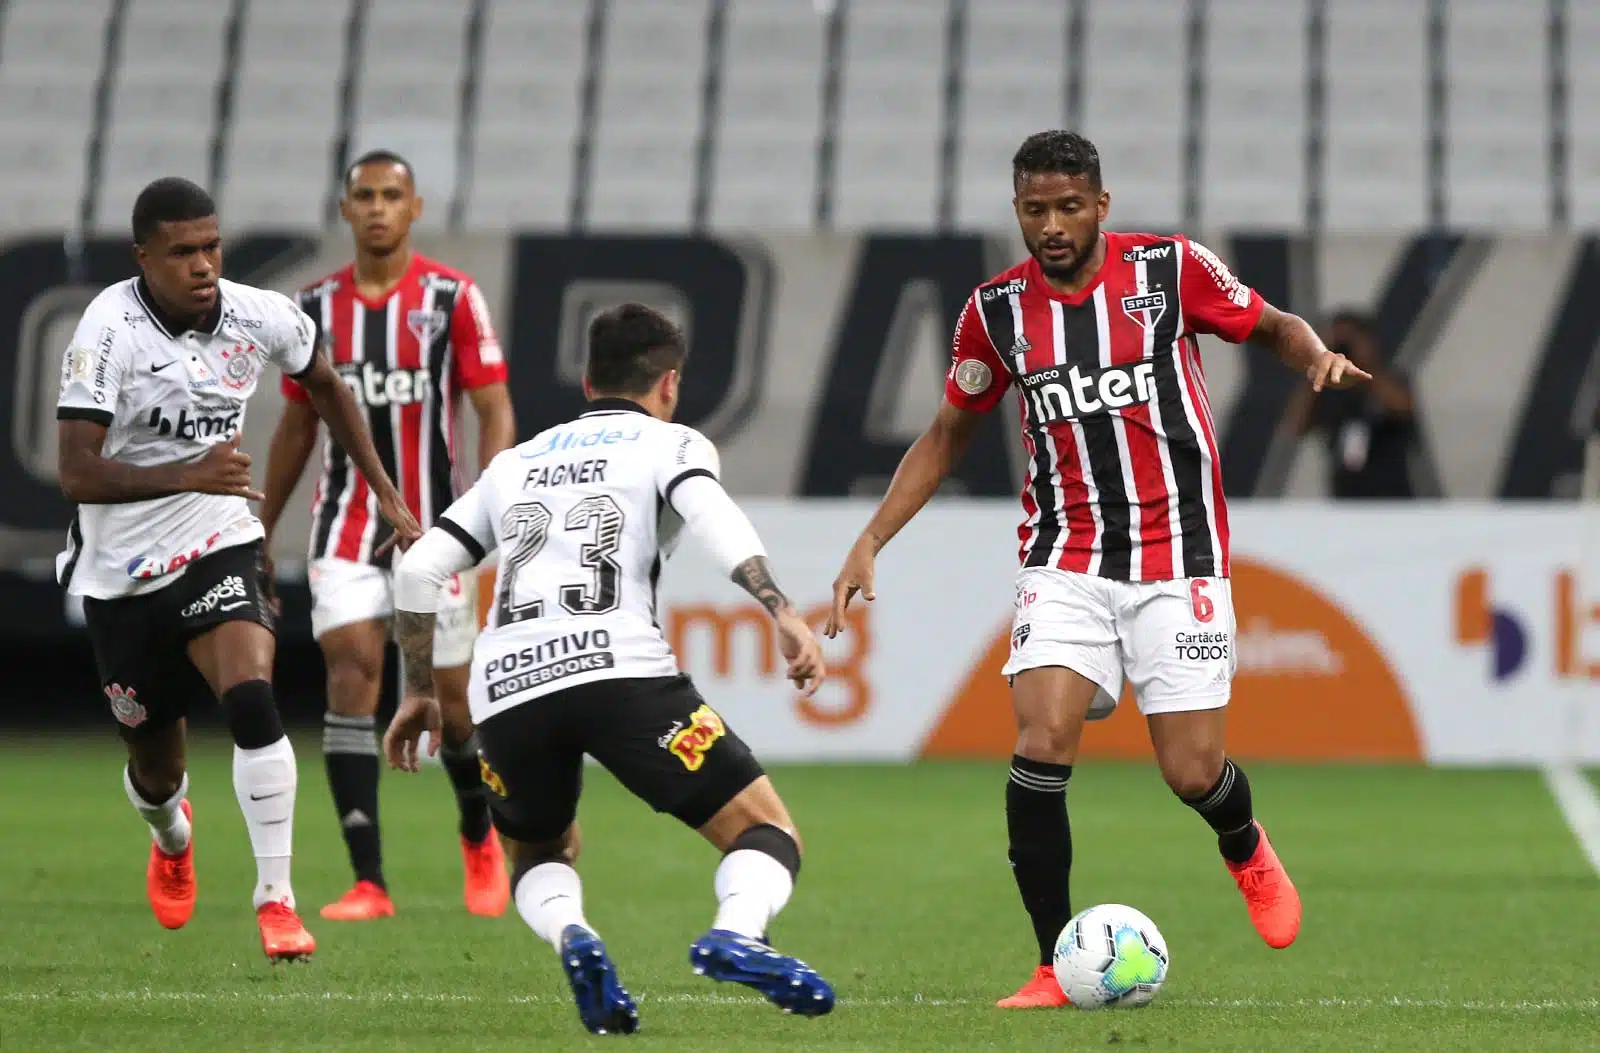 O Olhar do Adversário: O que pensam os torcedores do Corinthians?